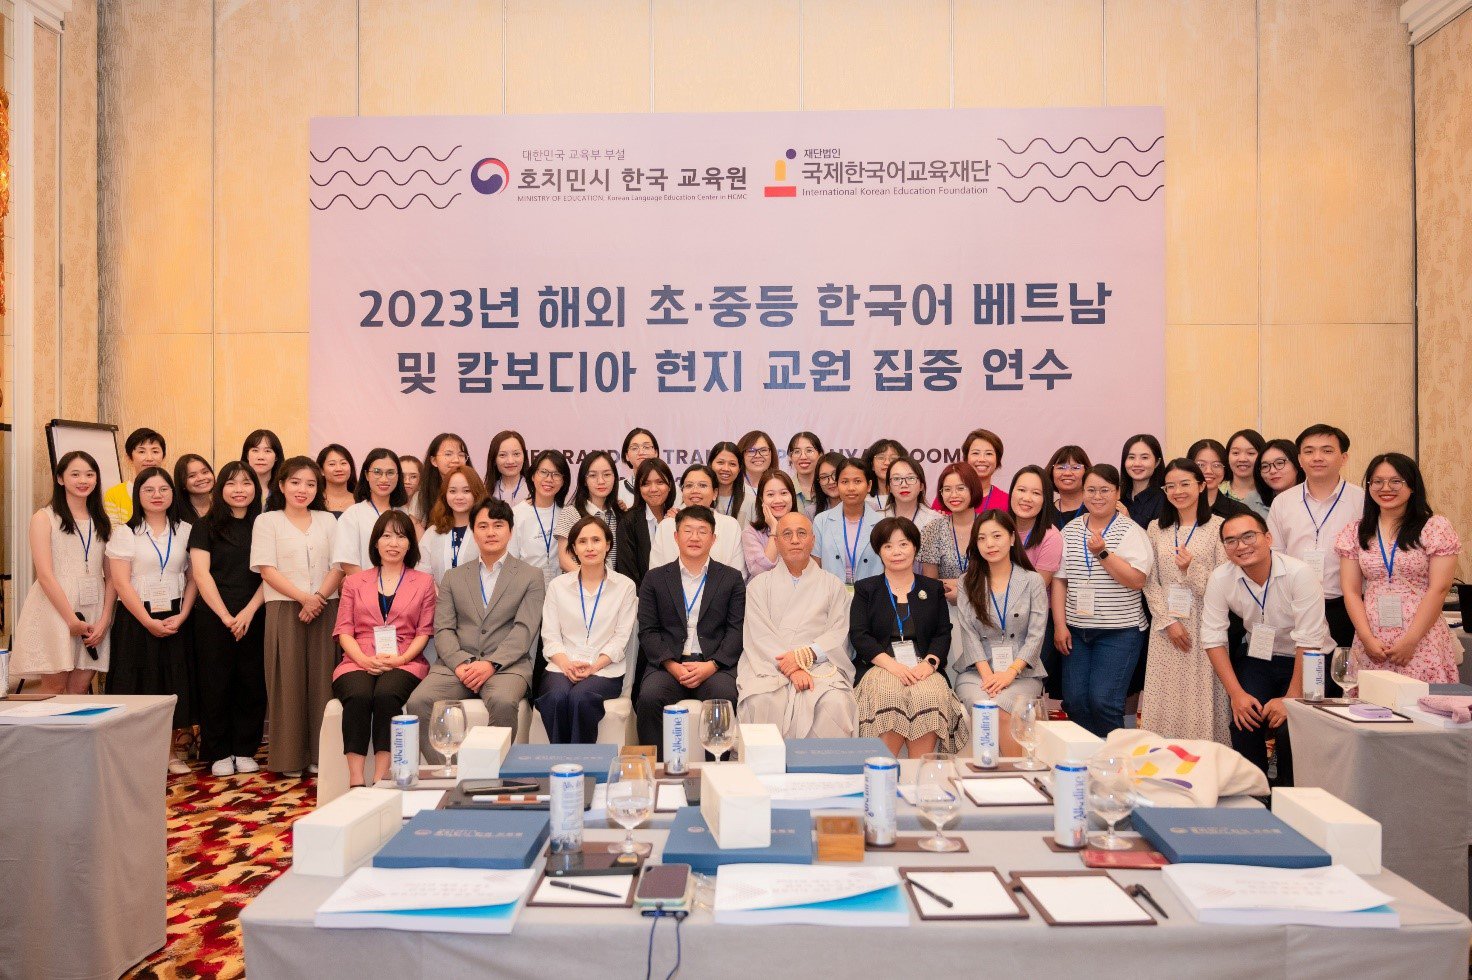 Tổ chức khóa đào tạo về giảng dạy và đánh giá chuyên sâu dành cho giáo viên tiếng Hàn năm 2023 - 3